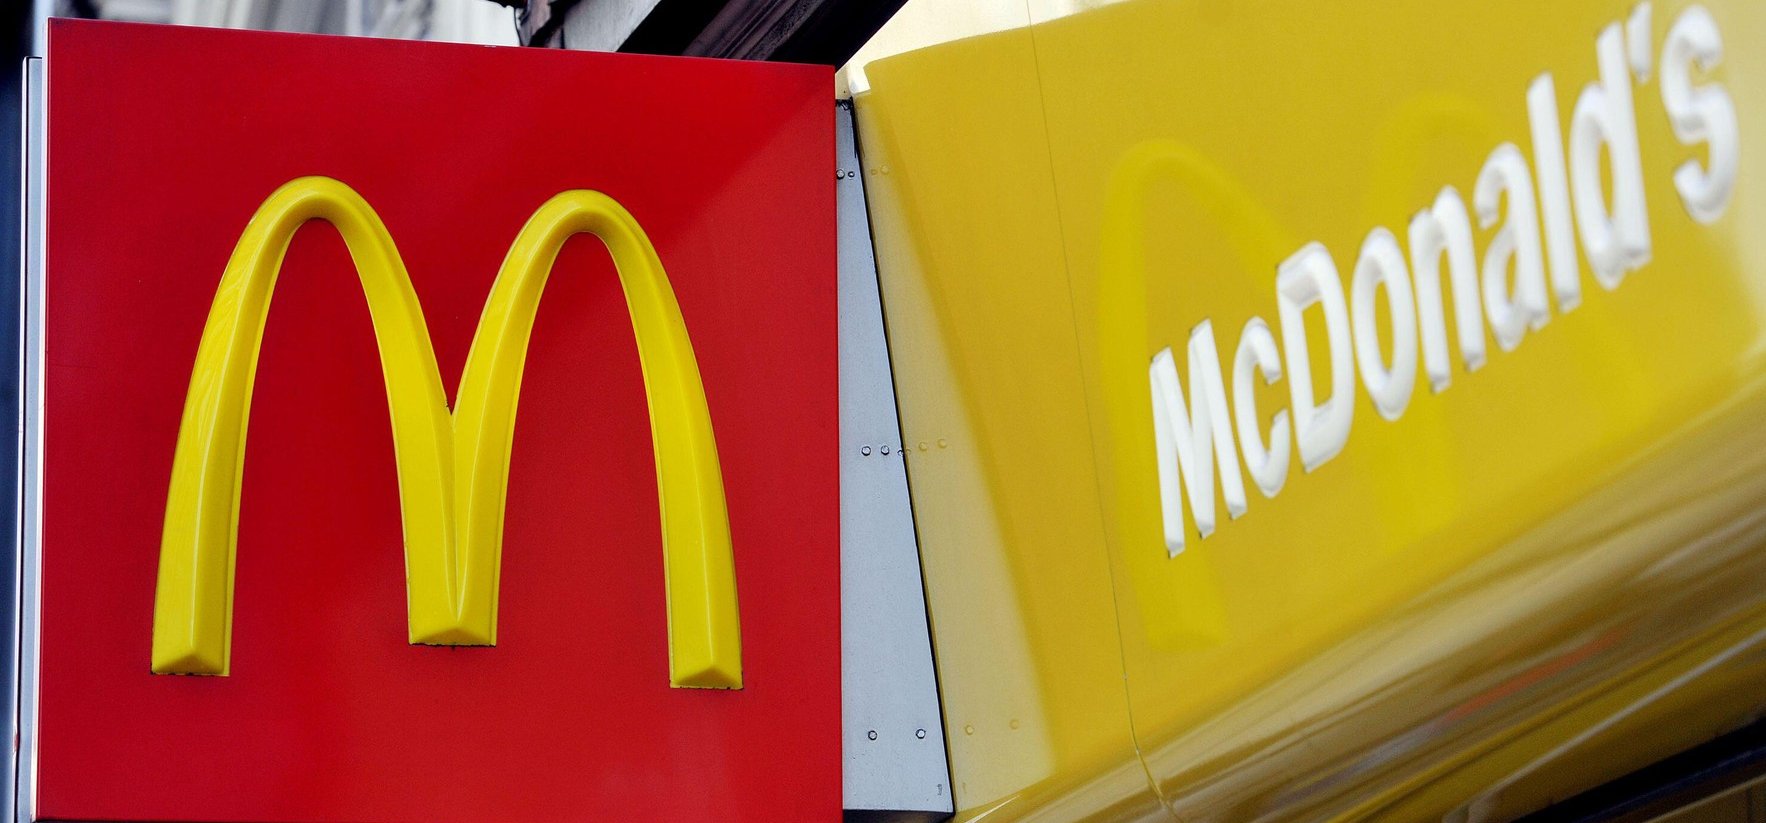 A McDonald’s folyamatosan törli a felháborodott kommenteket az oldaláról